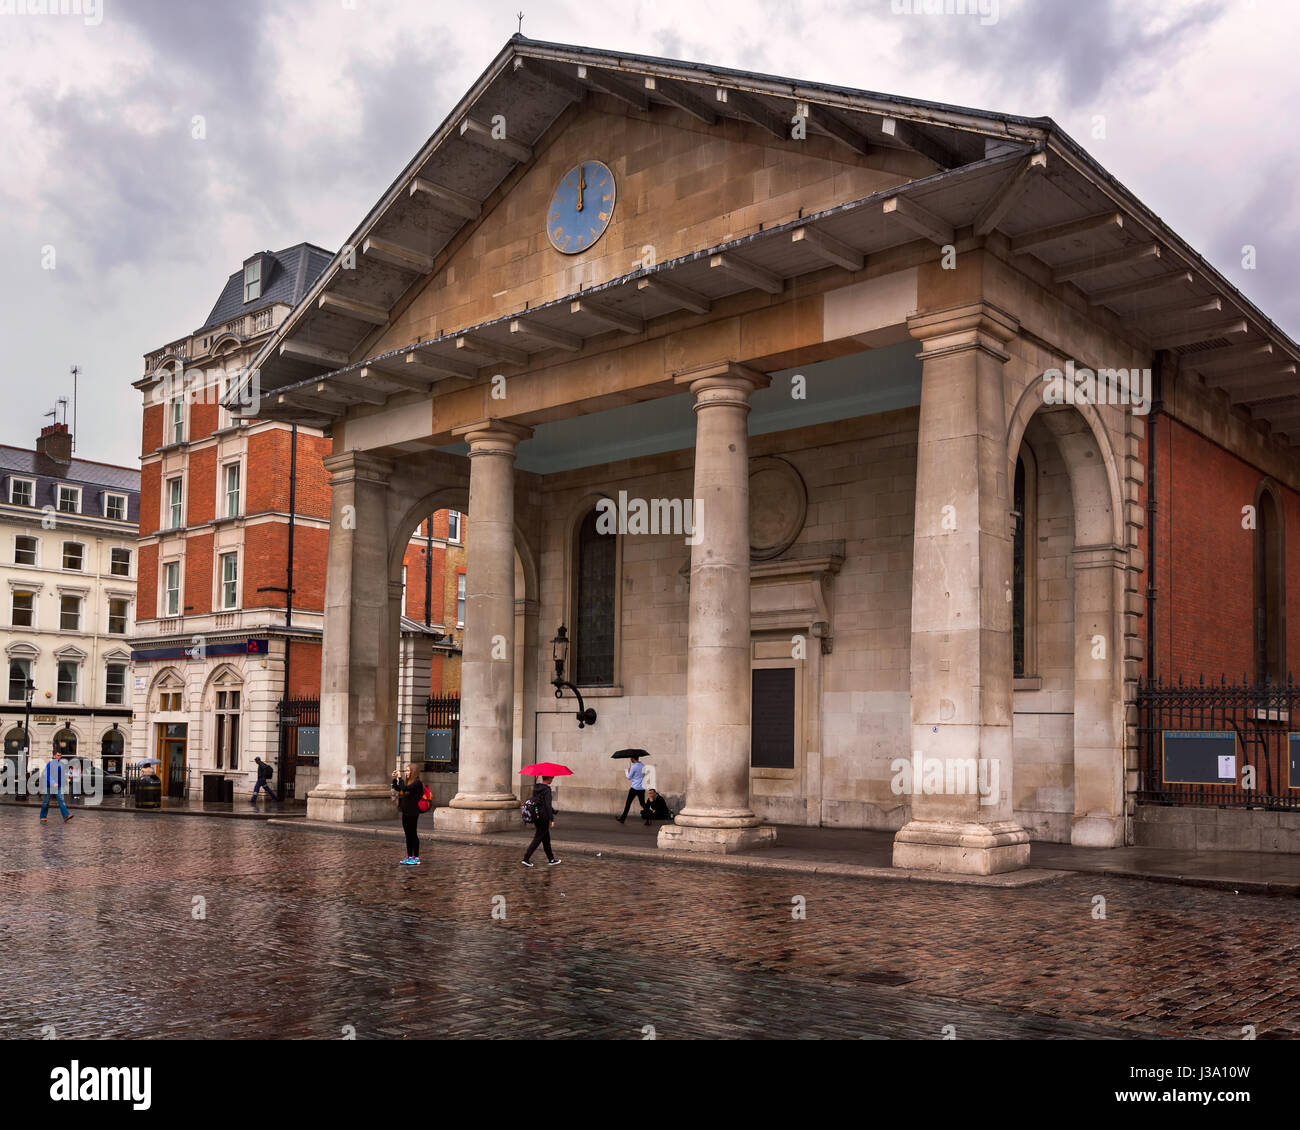 Londres, Royaume-Uni, le 6 octobre 2014 : Saint Paul's Church à Covent Garden, Londres. L'église St Paul, également connu sous le nom de l'Église des acteurs est conçu Banque D'Images